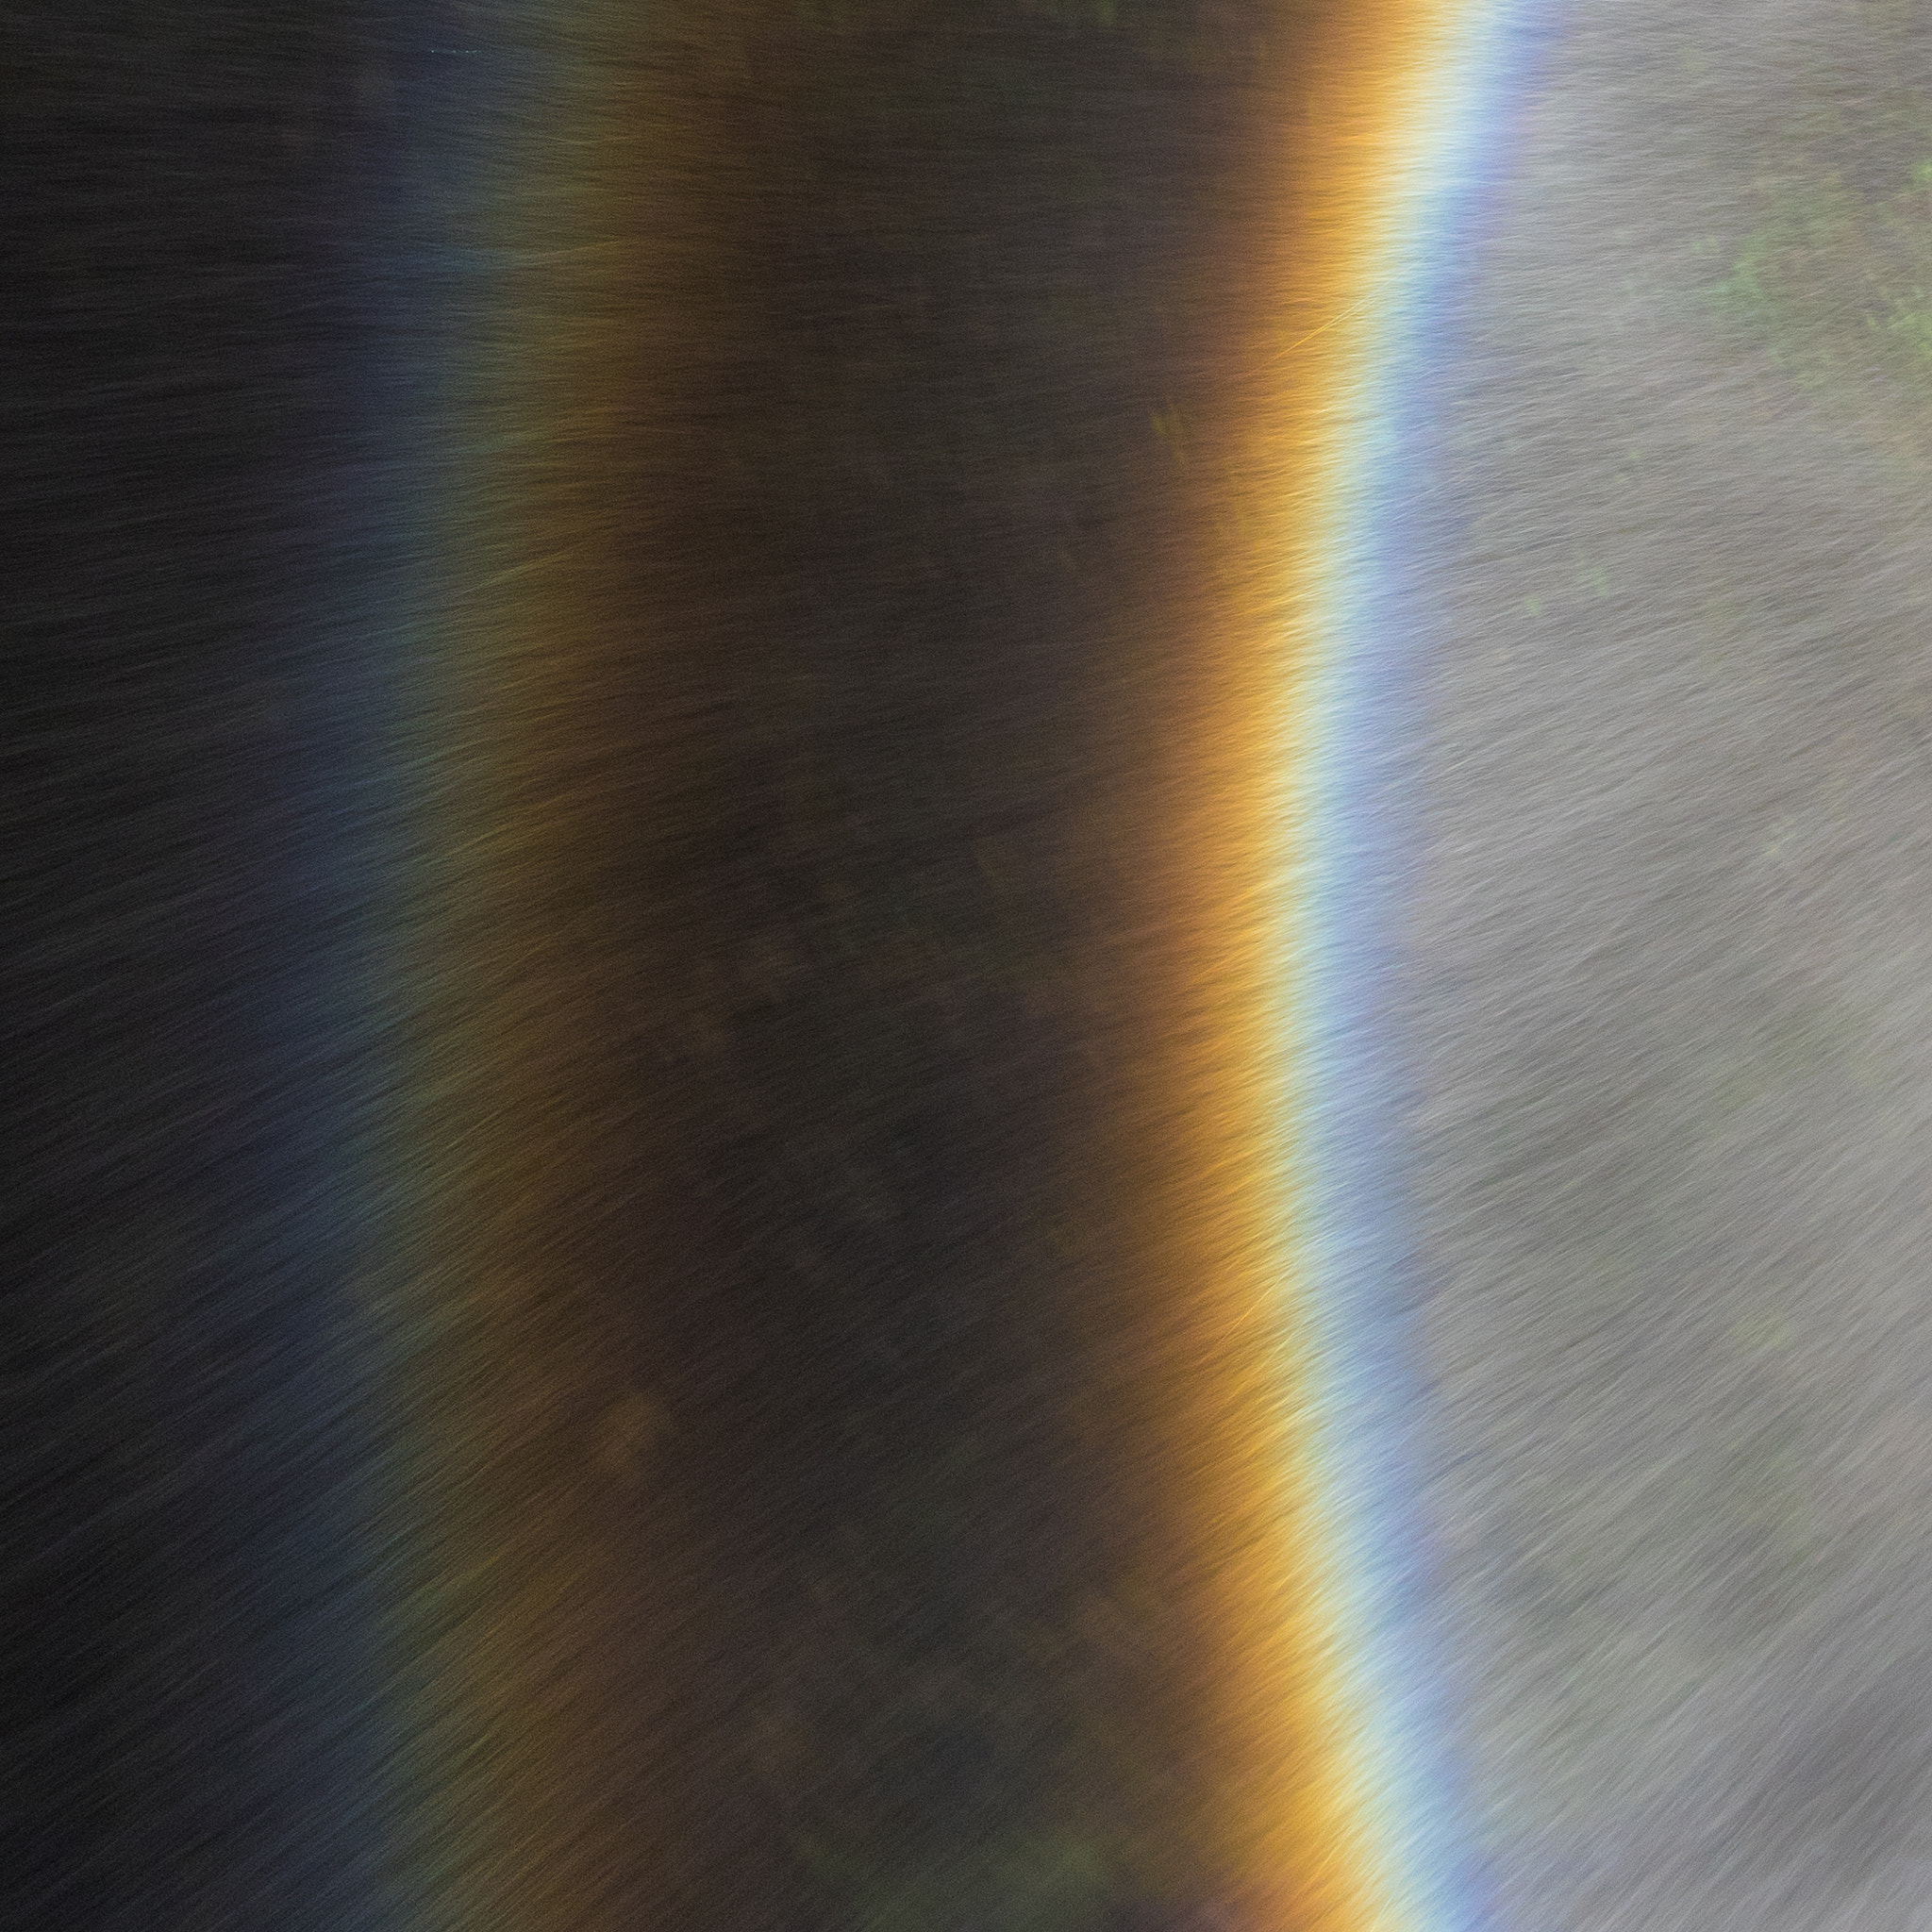 Canon EOS 7D Mark II sample photo. Rainbow spray photography